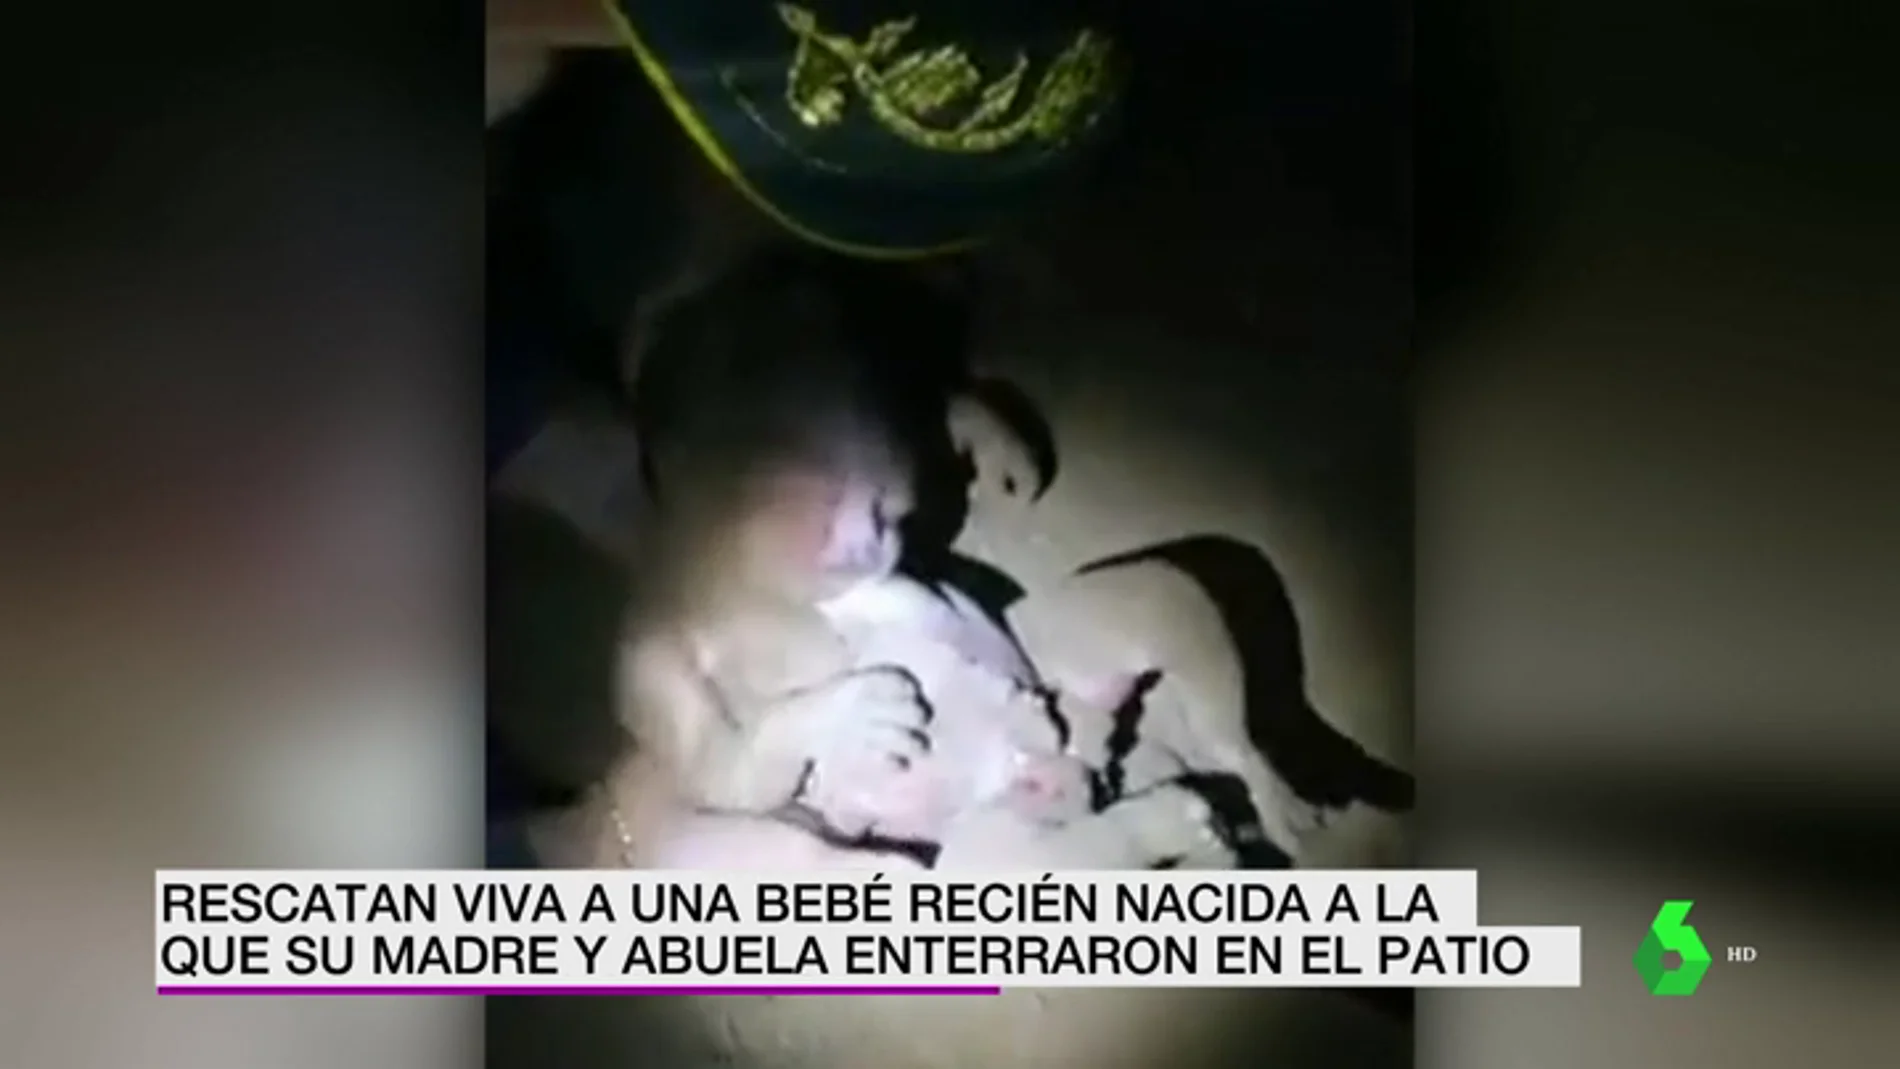 La angustiosas imágenes del rescate de una recién nacida tras pasar siete horas enterrada por su madre y su abuela